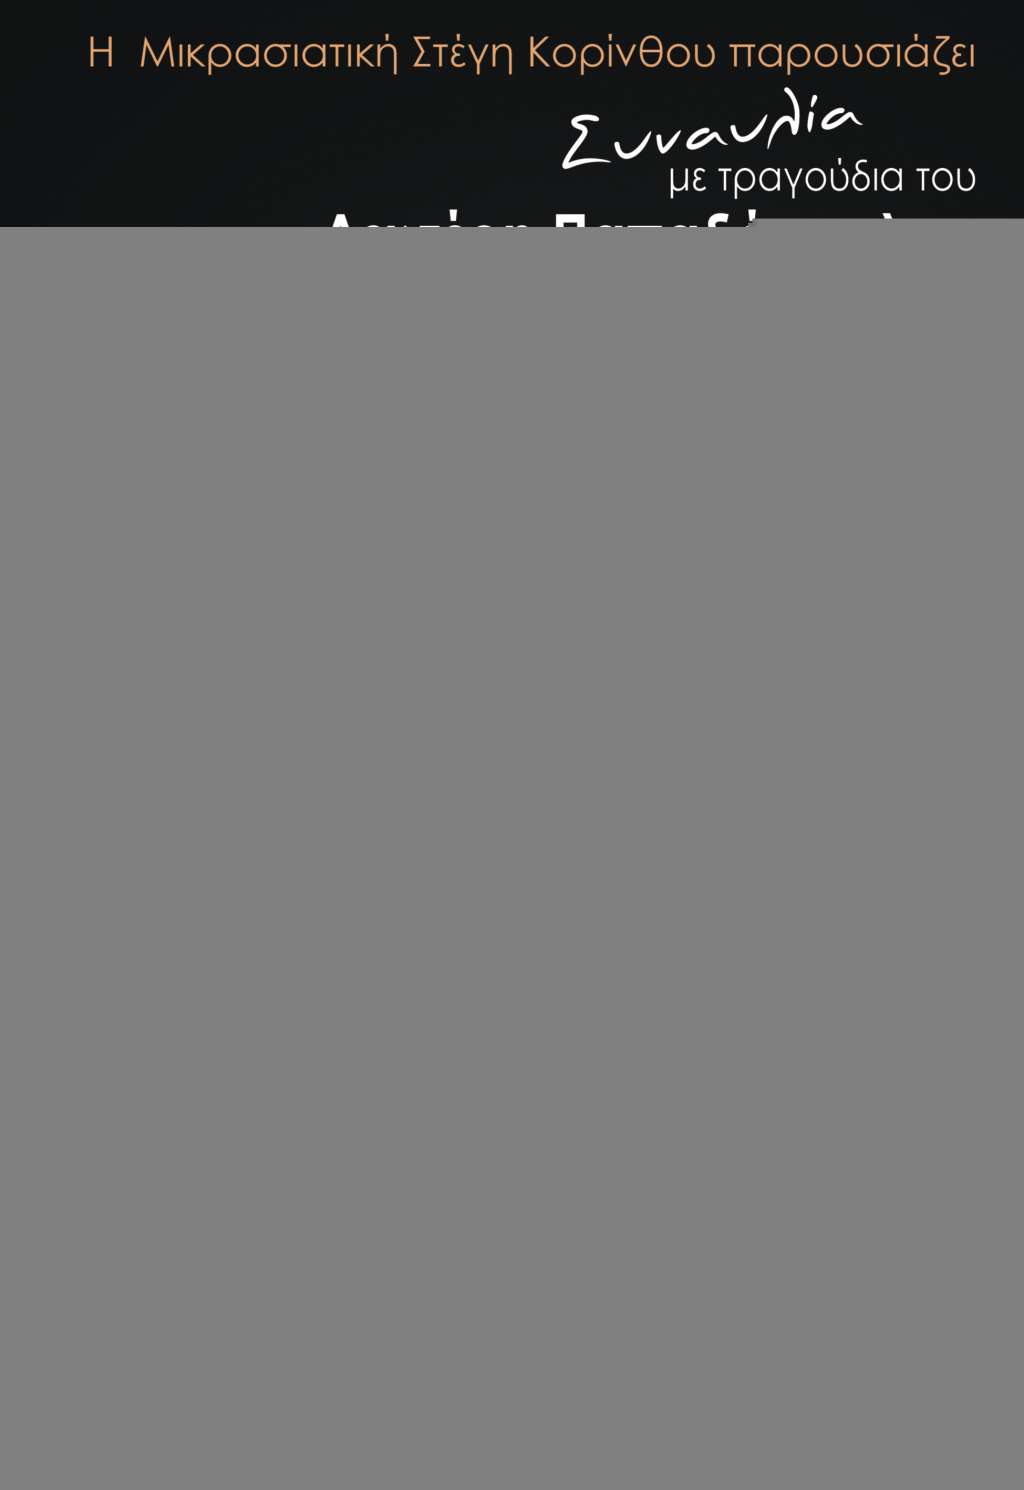 Μπέττυ Χαρλαύτη : Μικρασιατική Στέγη Κορίνθου - ΚΟΡΙΝΘΙΑ